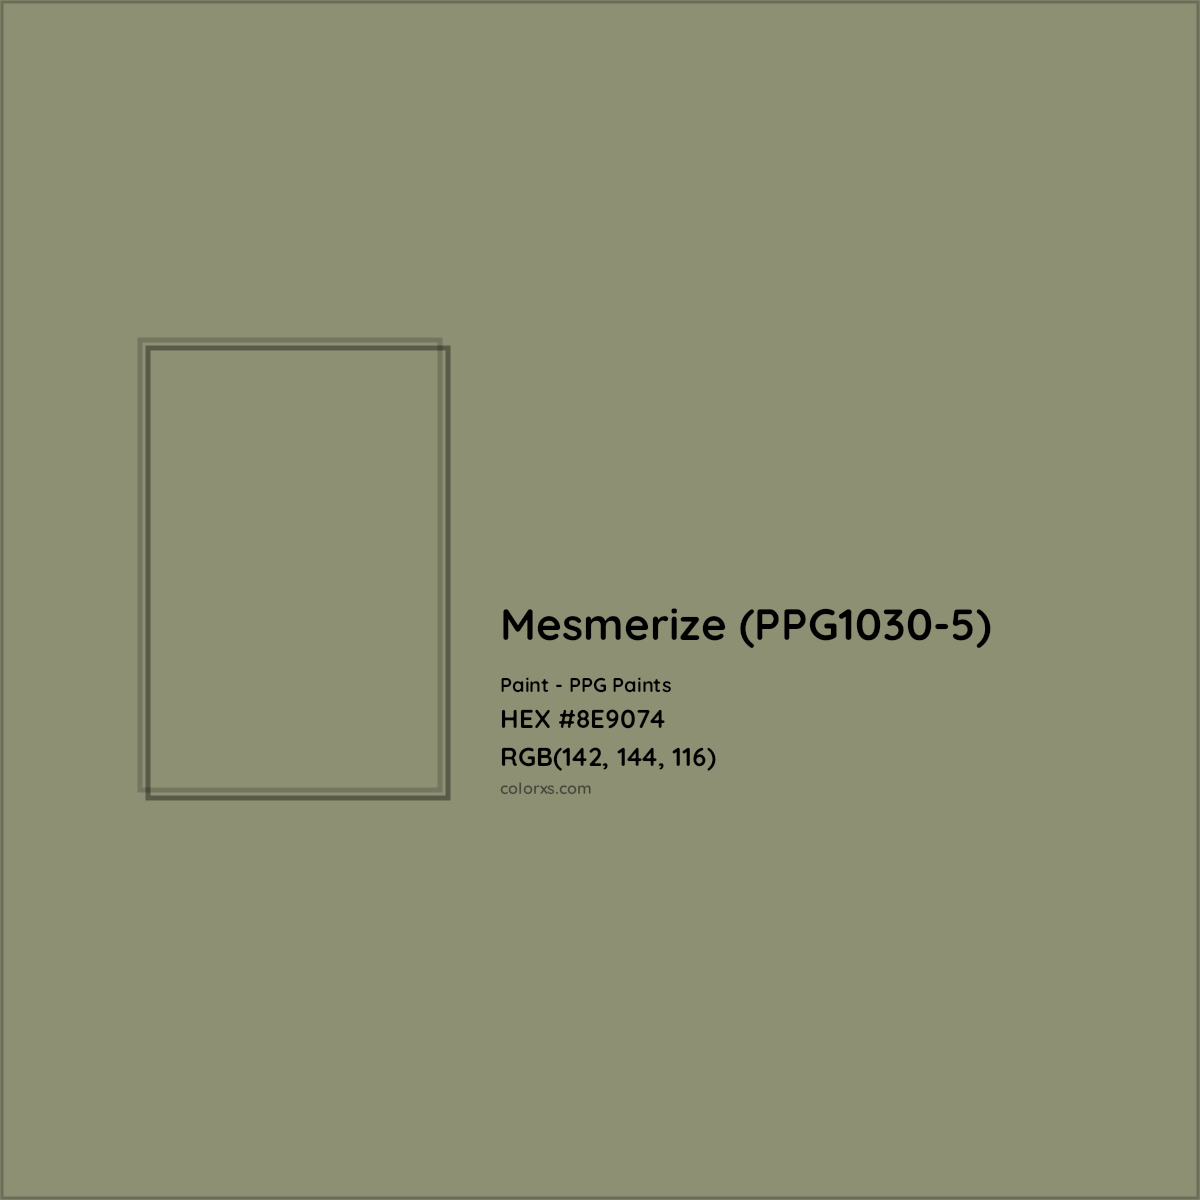 HEX #8E9074 Mesmerize (PPG1030-5) Paint PPG Paints - Color Code